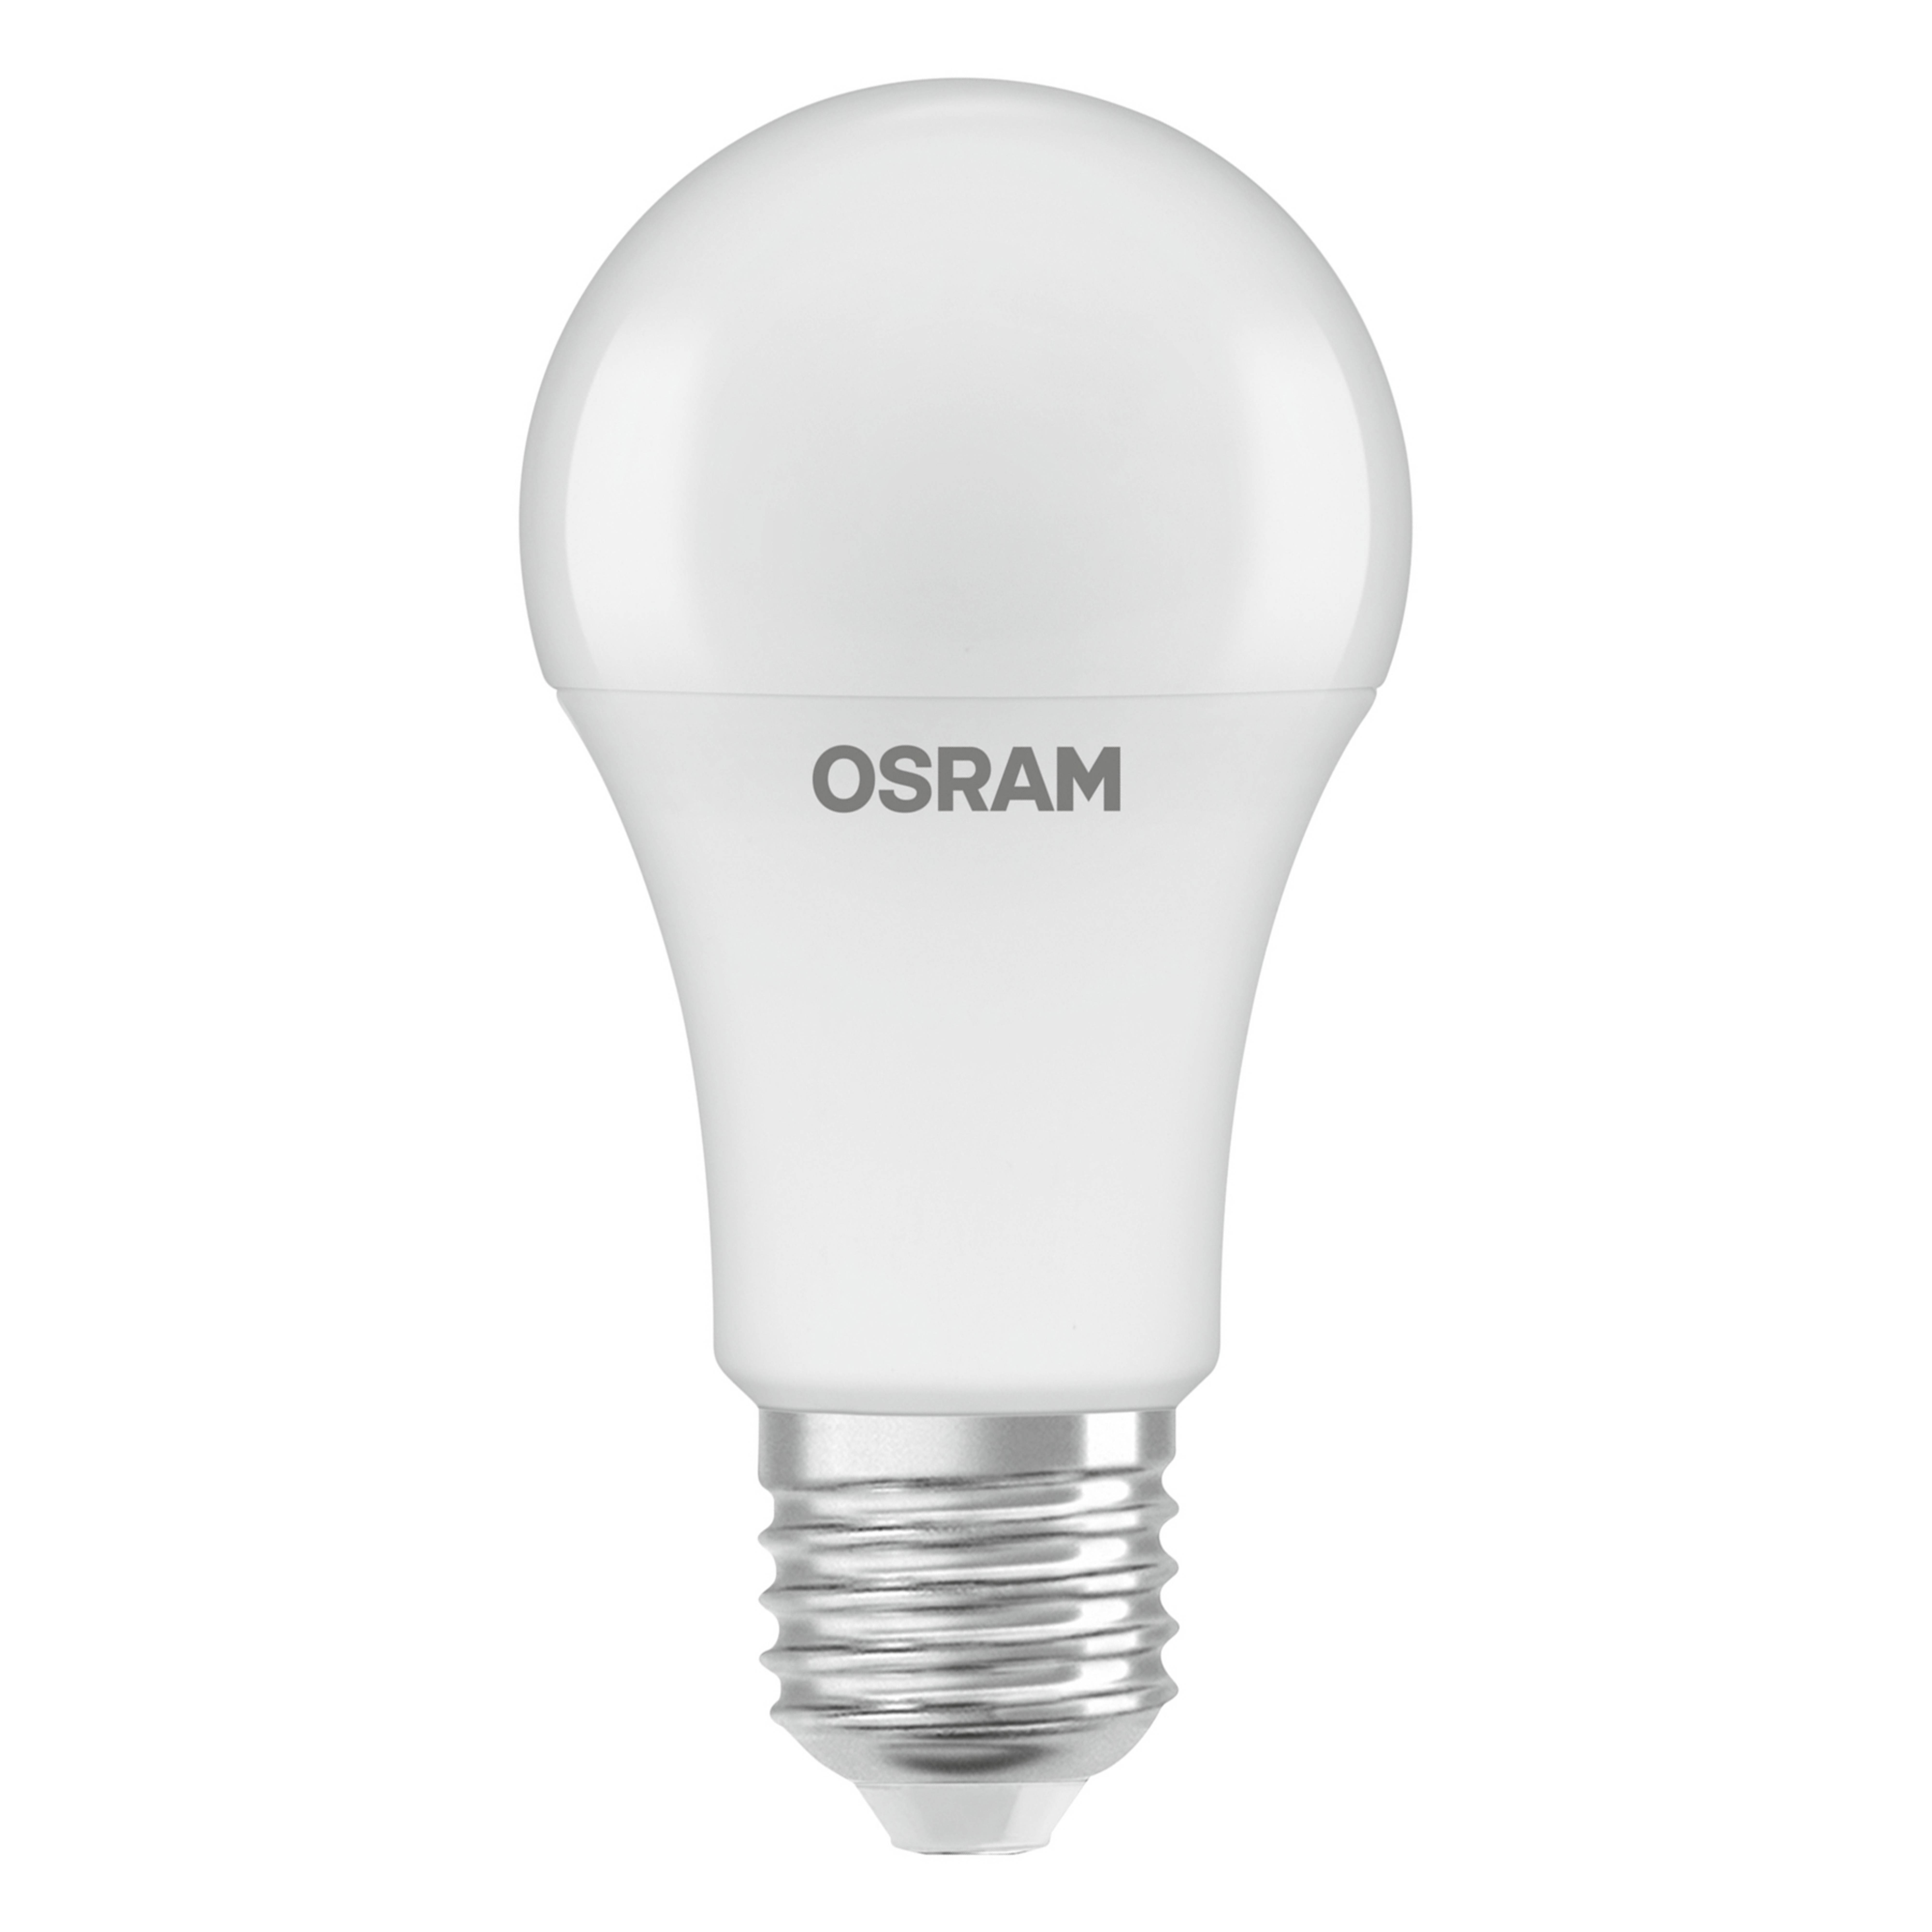 Λαμπτήρας LED OSRAM E27 8.8W 827 με αισθητήρα φωτός ημέρας